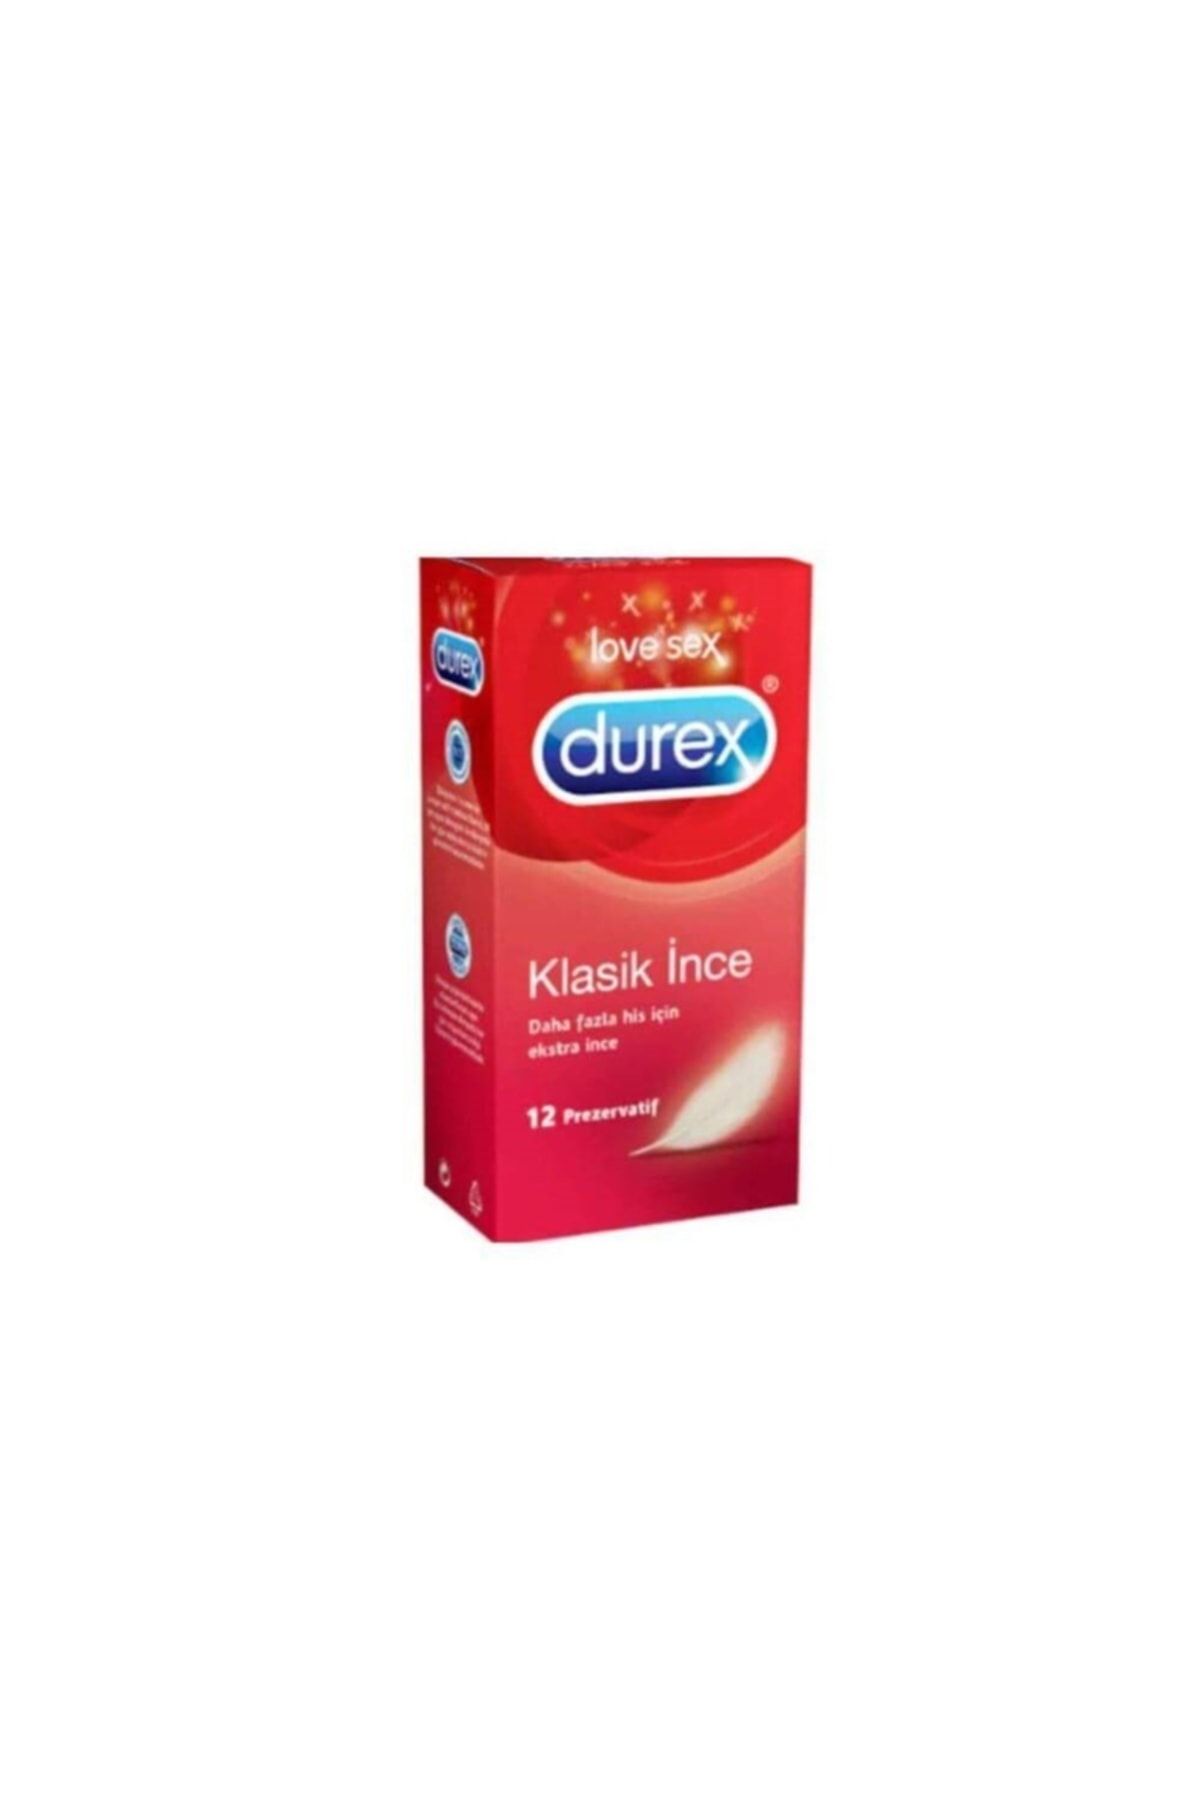 Durex Klasik Ince Prezervatif 12'li